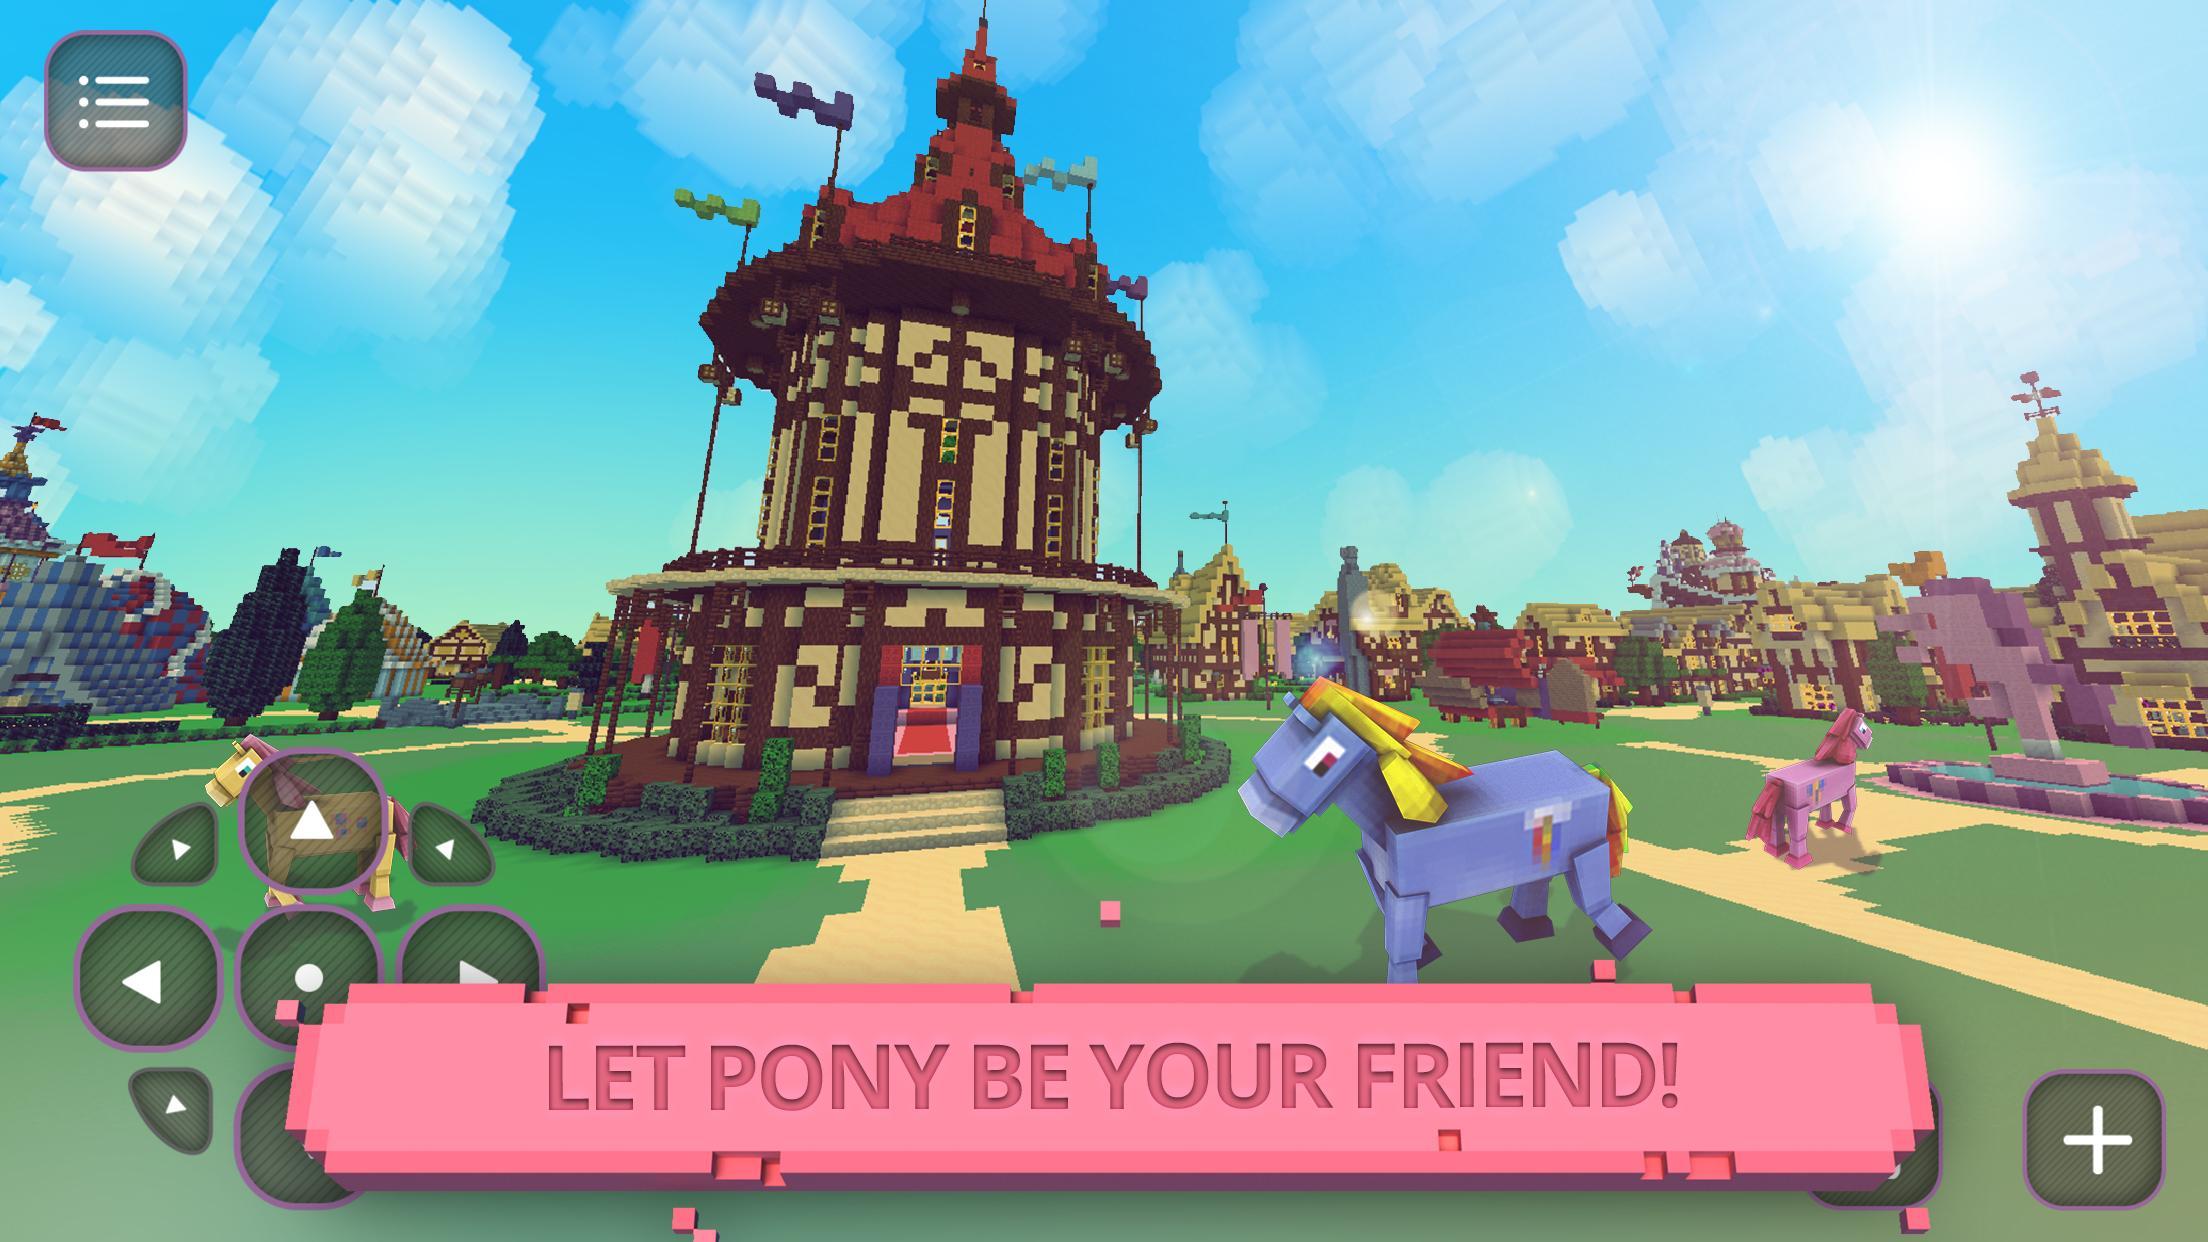 Screenshot 1 of Pony Girls Craft: Eksplorasi 1.32